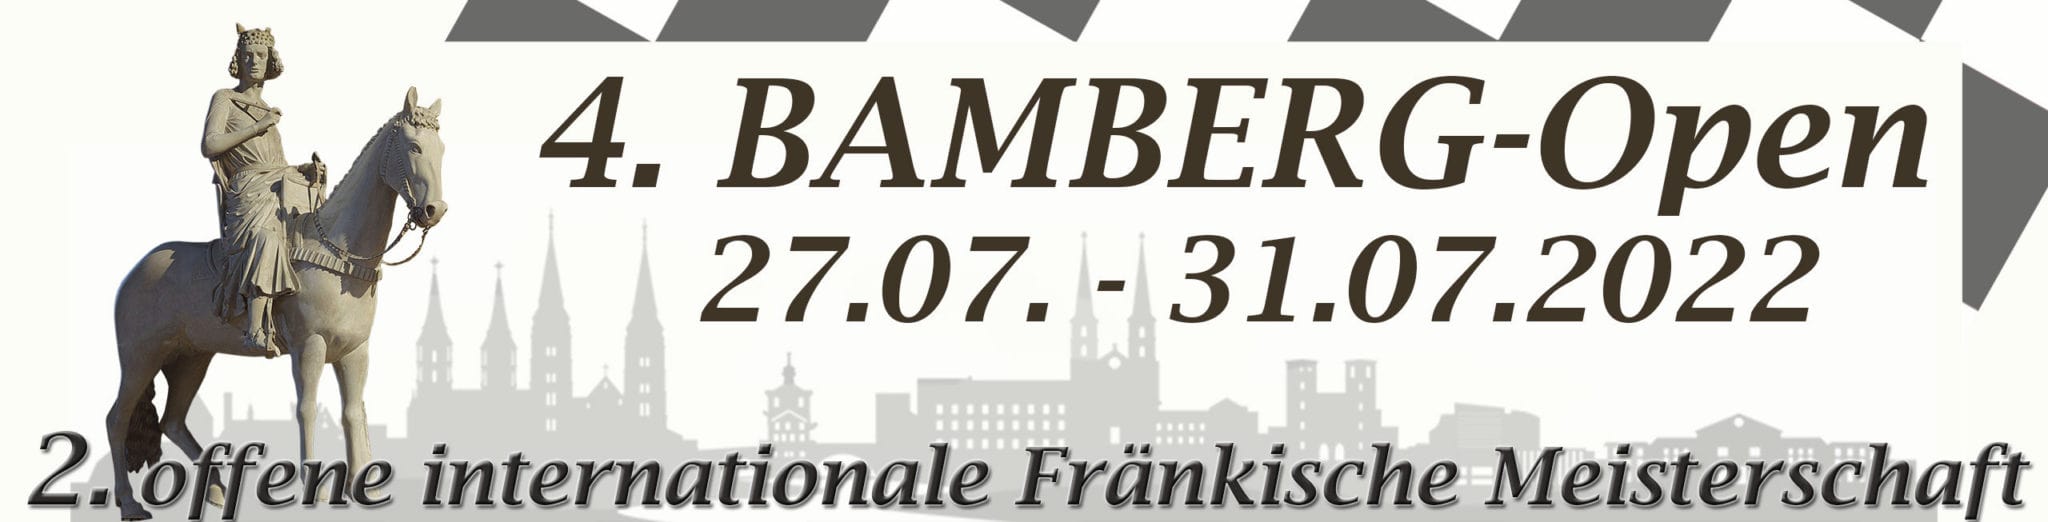 4. Bamberg-Open 2022